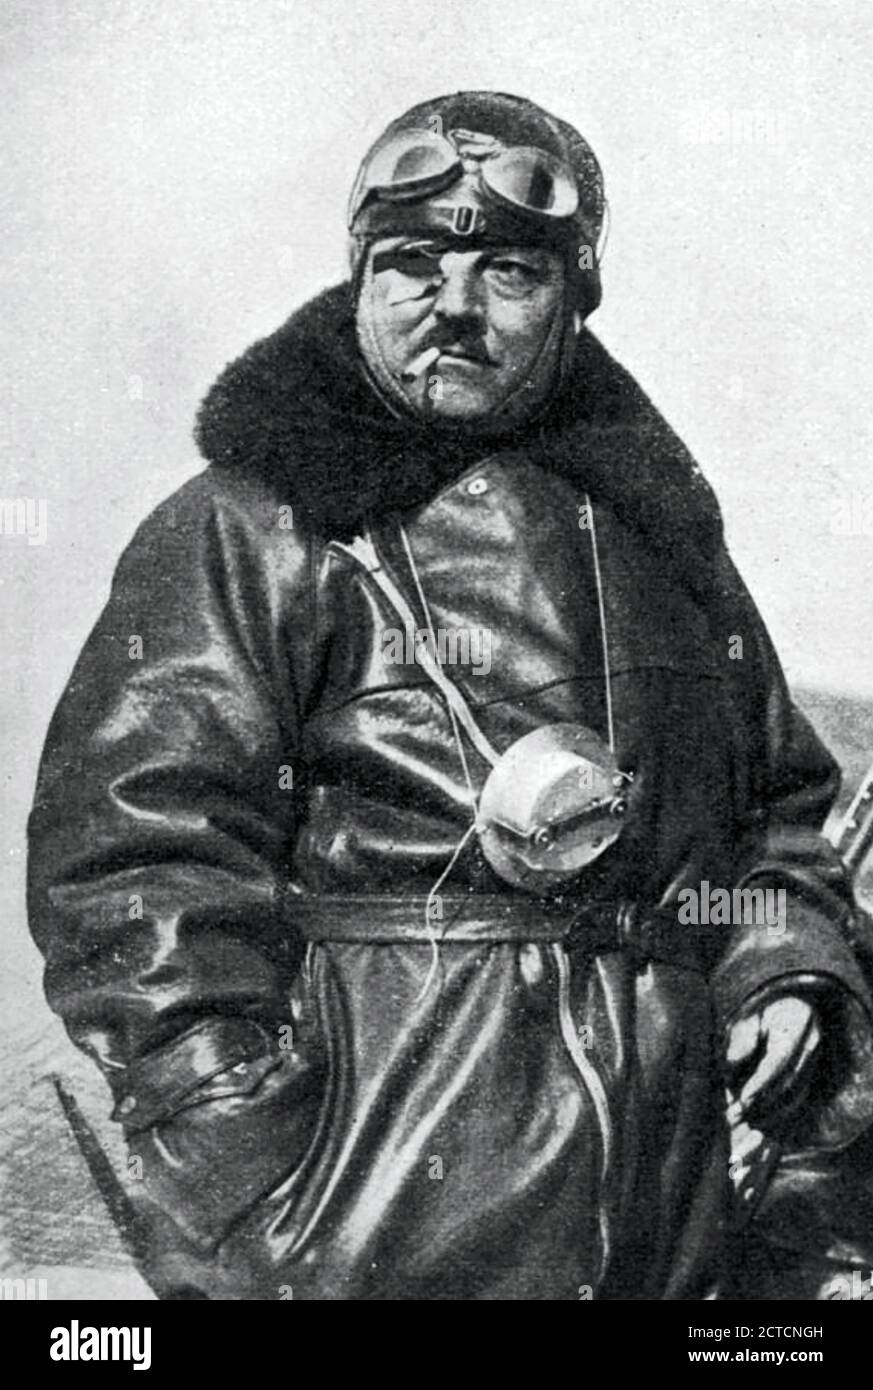 FRANÇOIS COLI (1881-1927), pilota e navigatore francese, morì nel tentativo di primo volo transatlantico Foto Stock